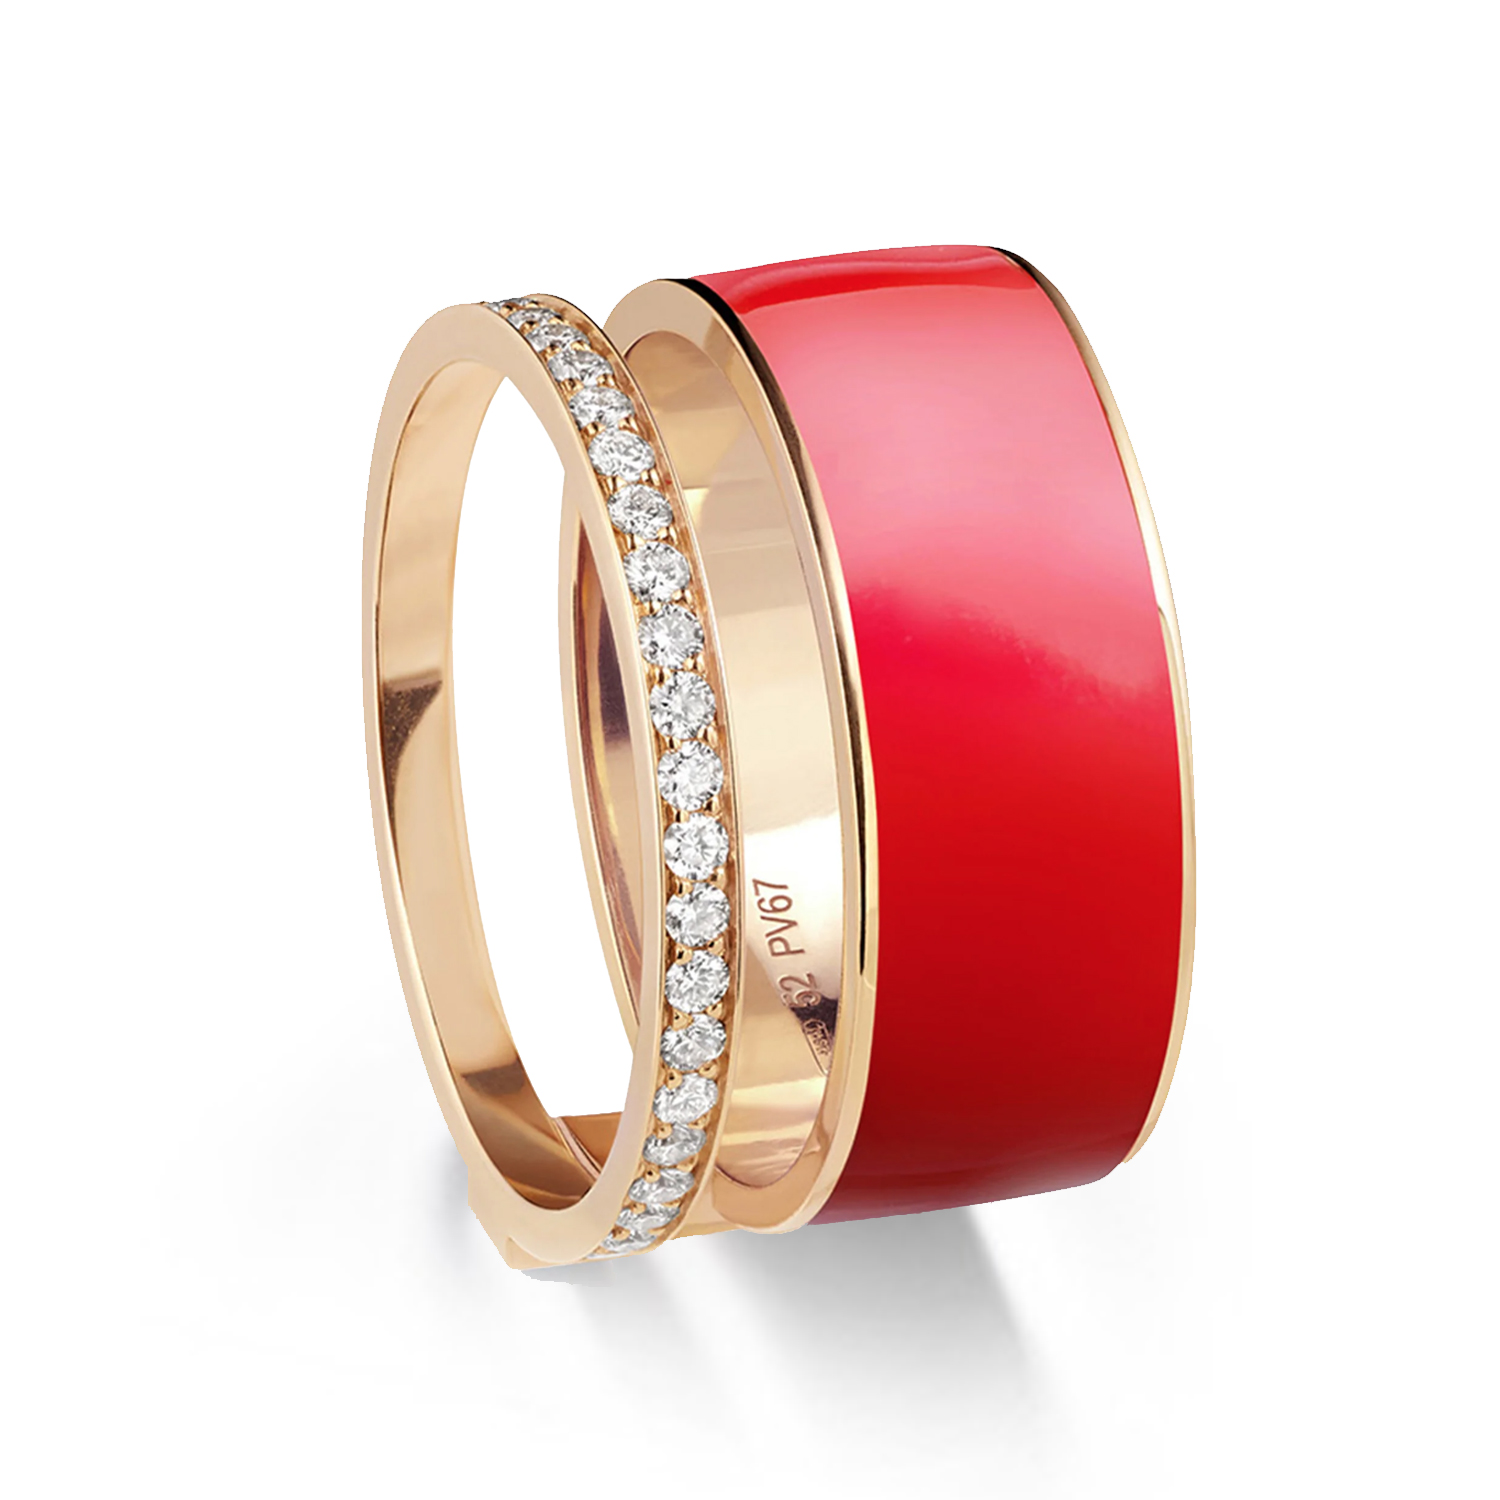 Bague berbere chromatic laqué couleur rouge en or rose pavée de diamants - Repossi